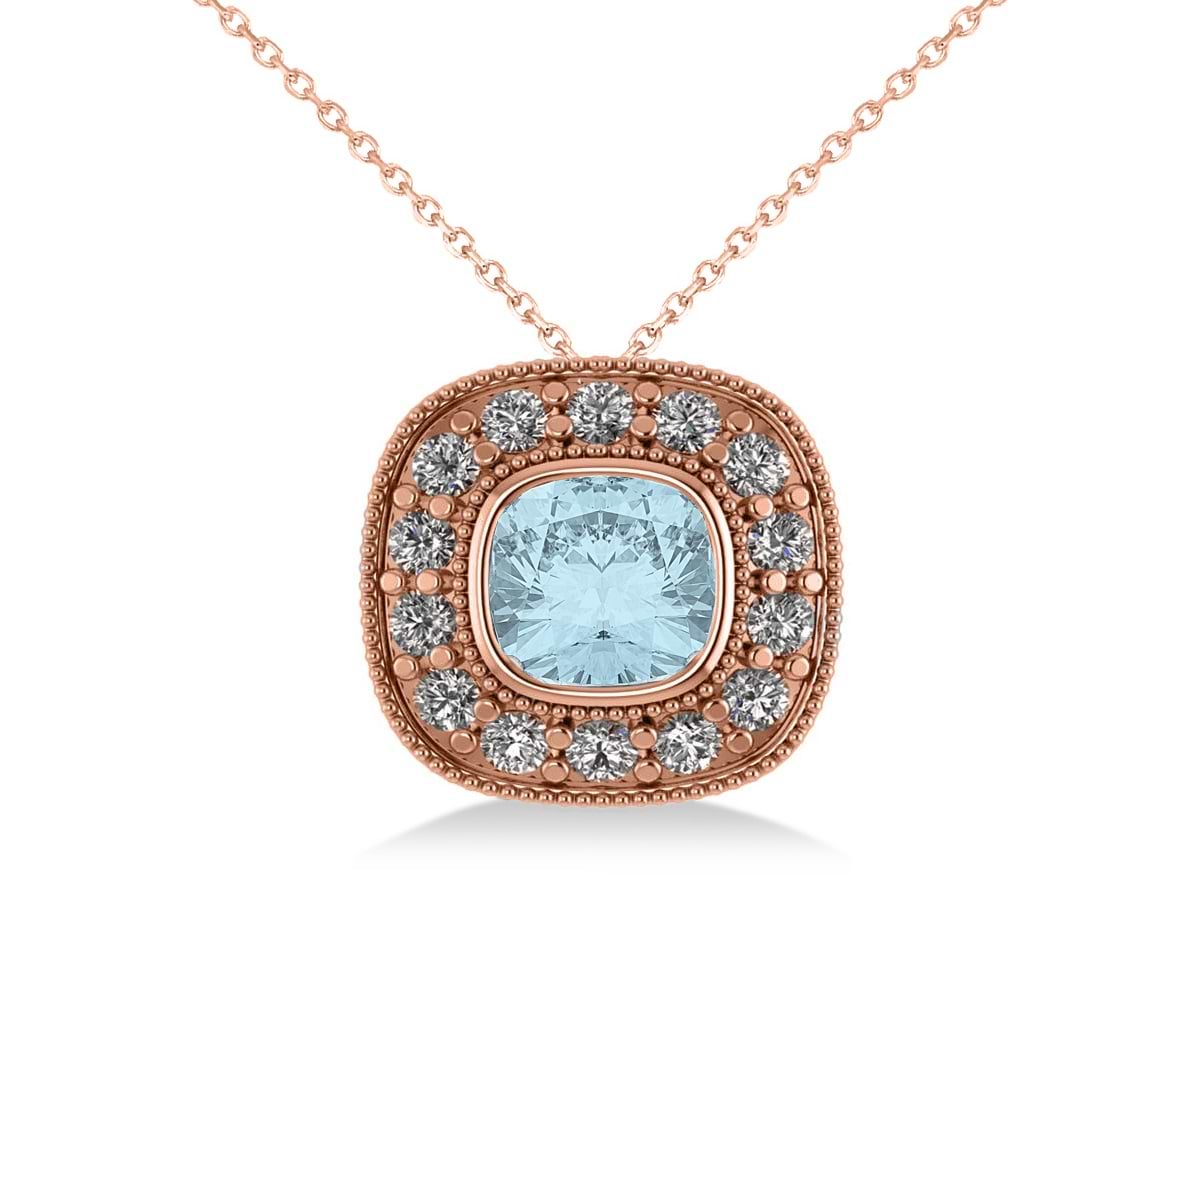 Aquamarine & Diamond Halo Cushion Pendant Necklace 14k Rose Gold (1.23ct)